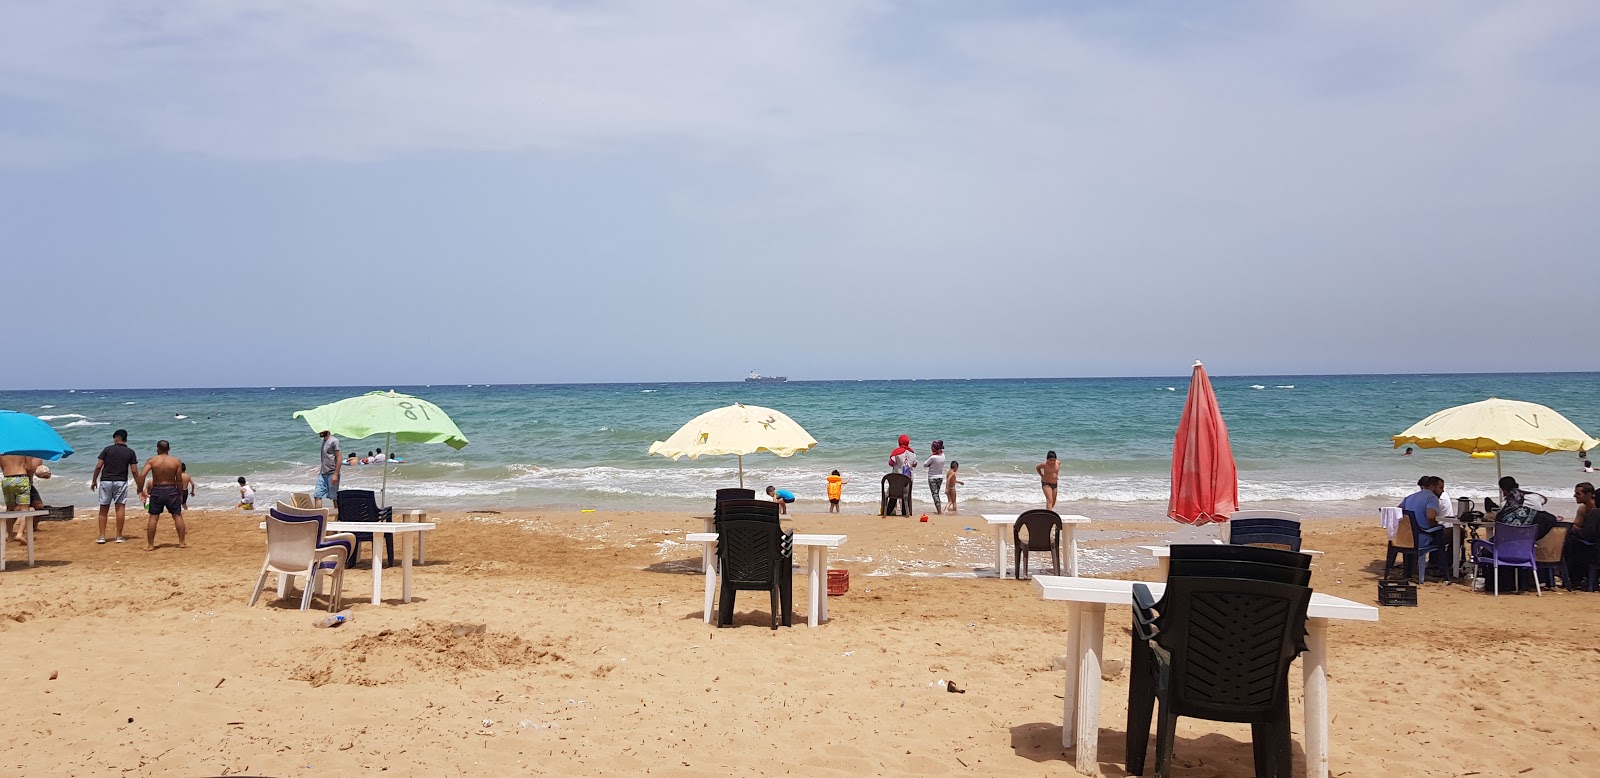 Ghazieyeh beach'in fotoğrafı parlak kum yüzey ile